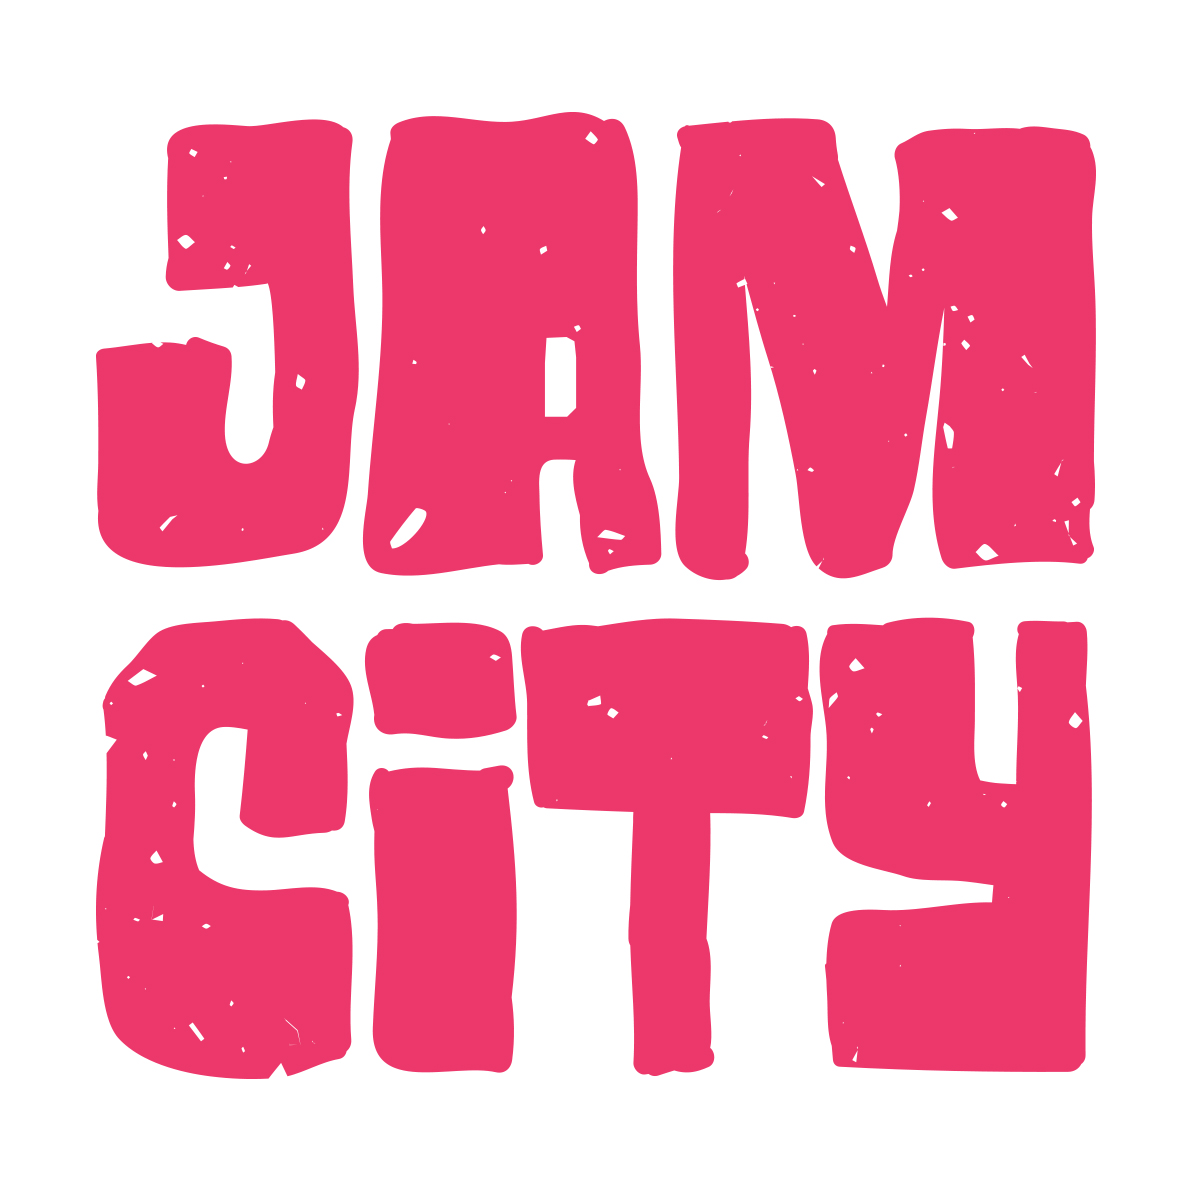 jam-city-logo